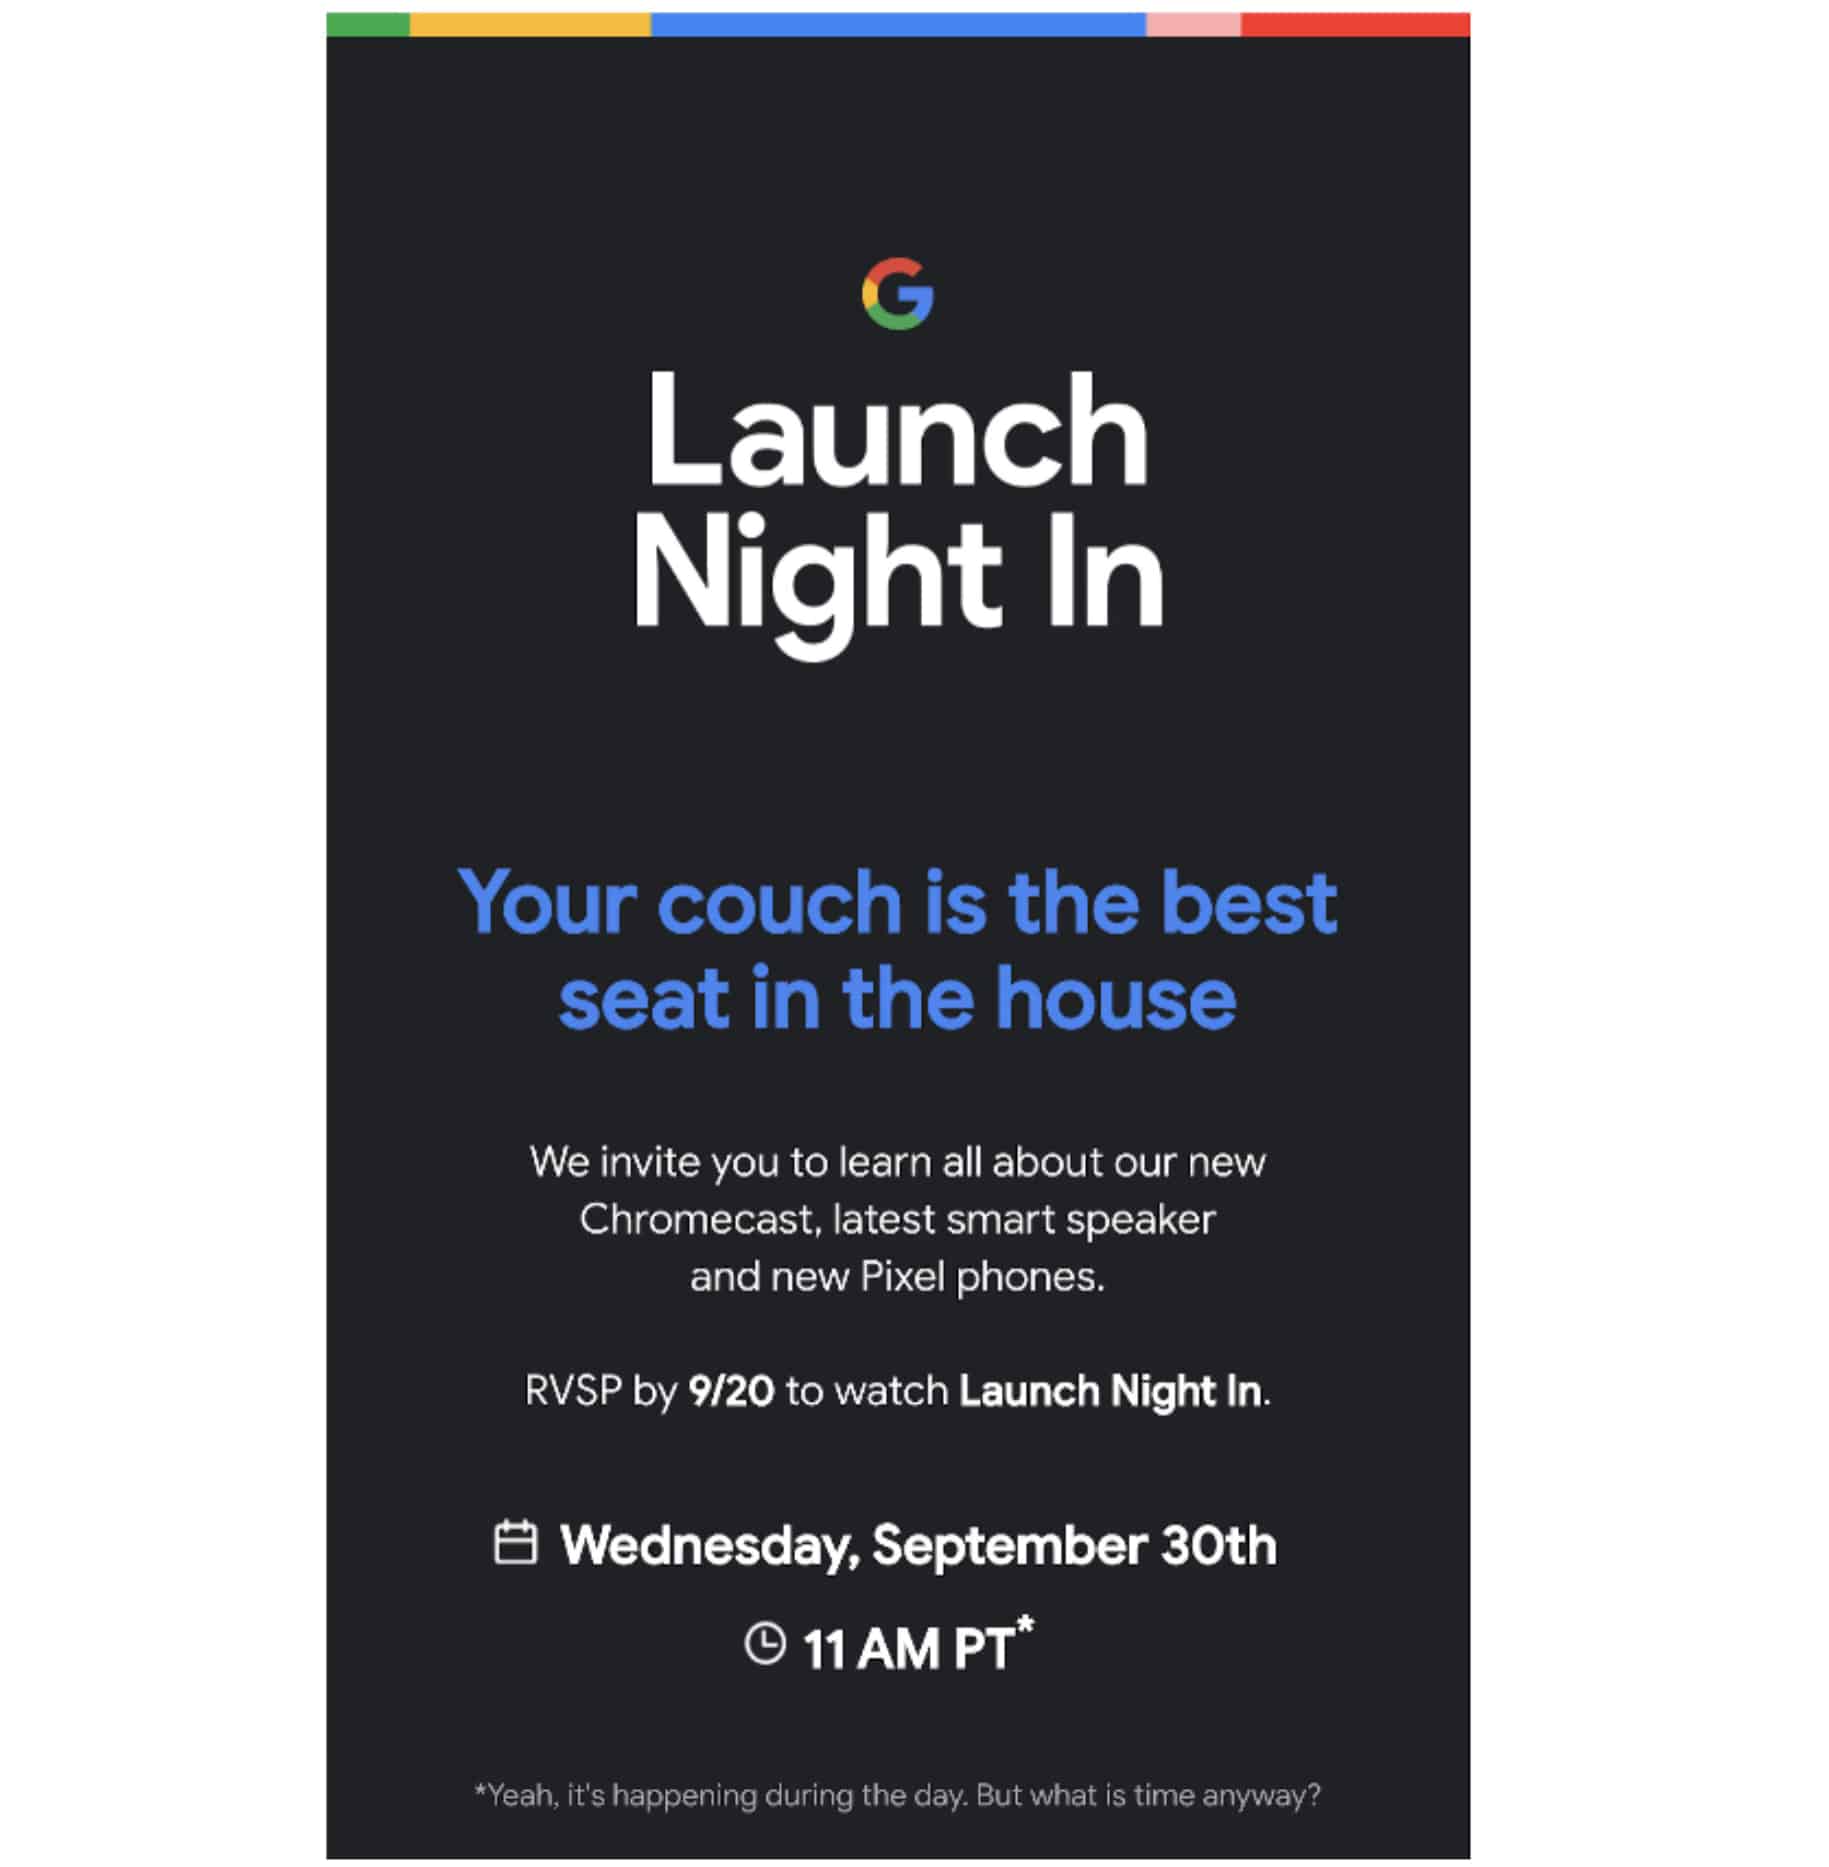 Google Pixel 5 Launches on September 30 Alongside Chromecast and Smart Speaker